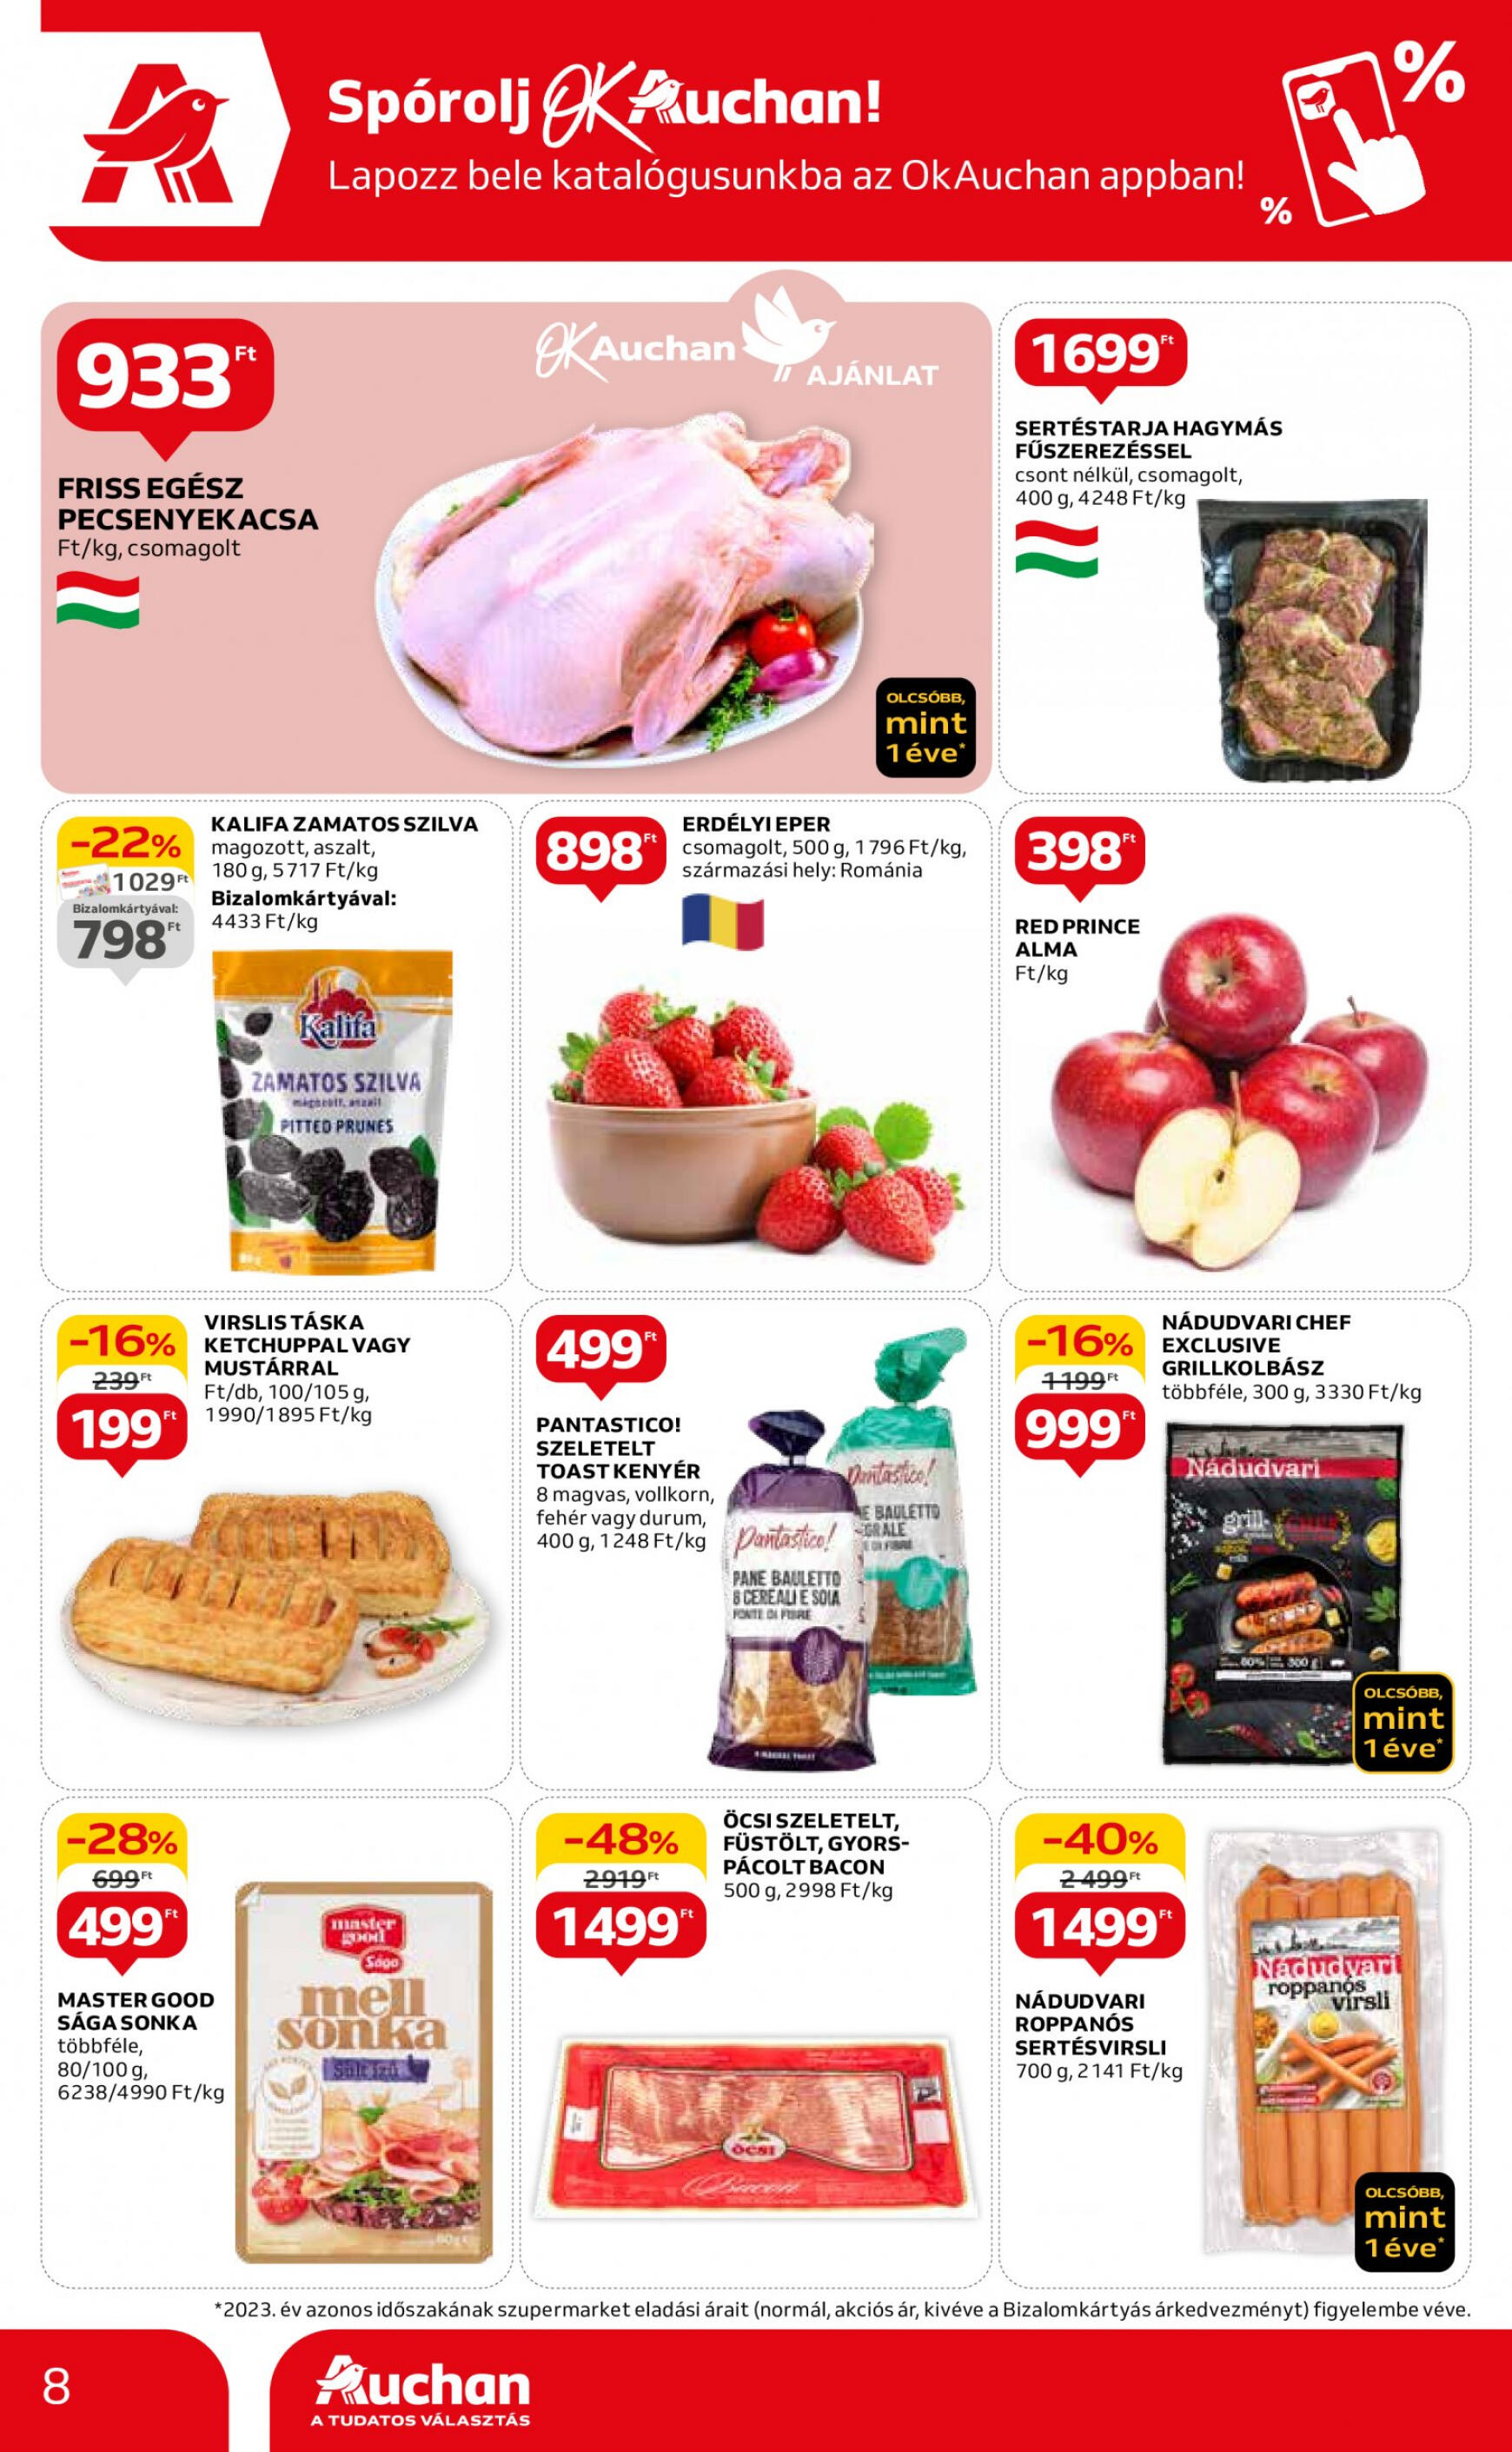 auchan - Aktuális újság Auchan szupermarket 05.16. - 05.22. - page: 8